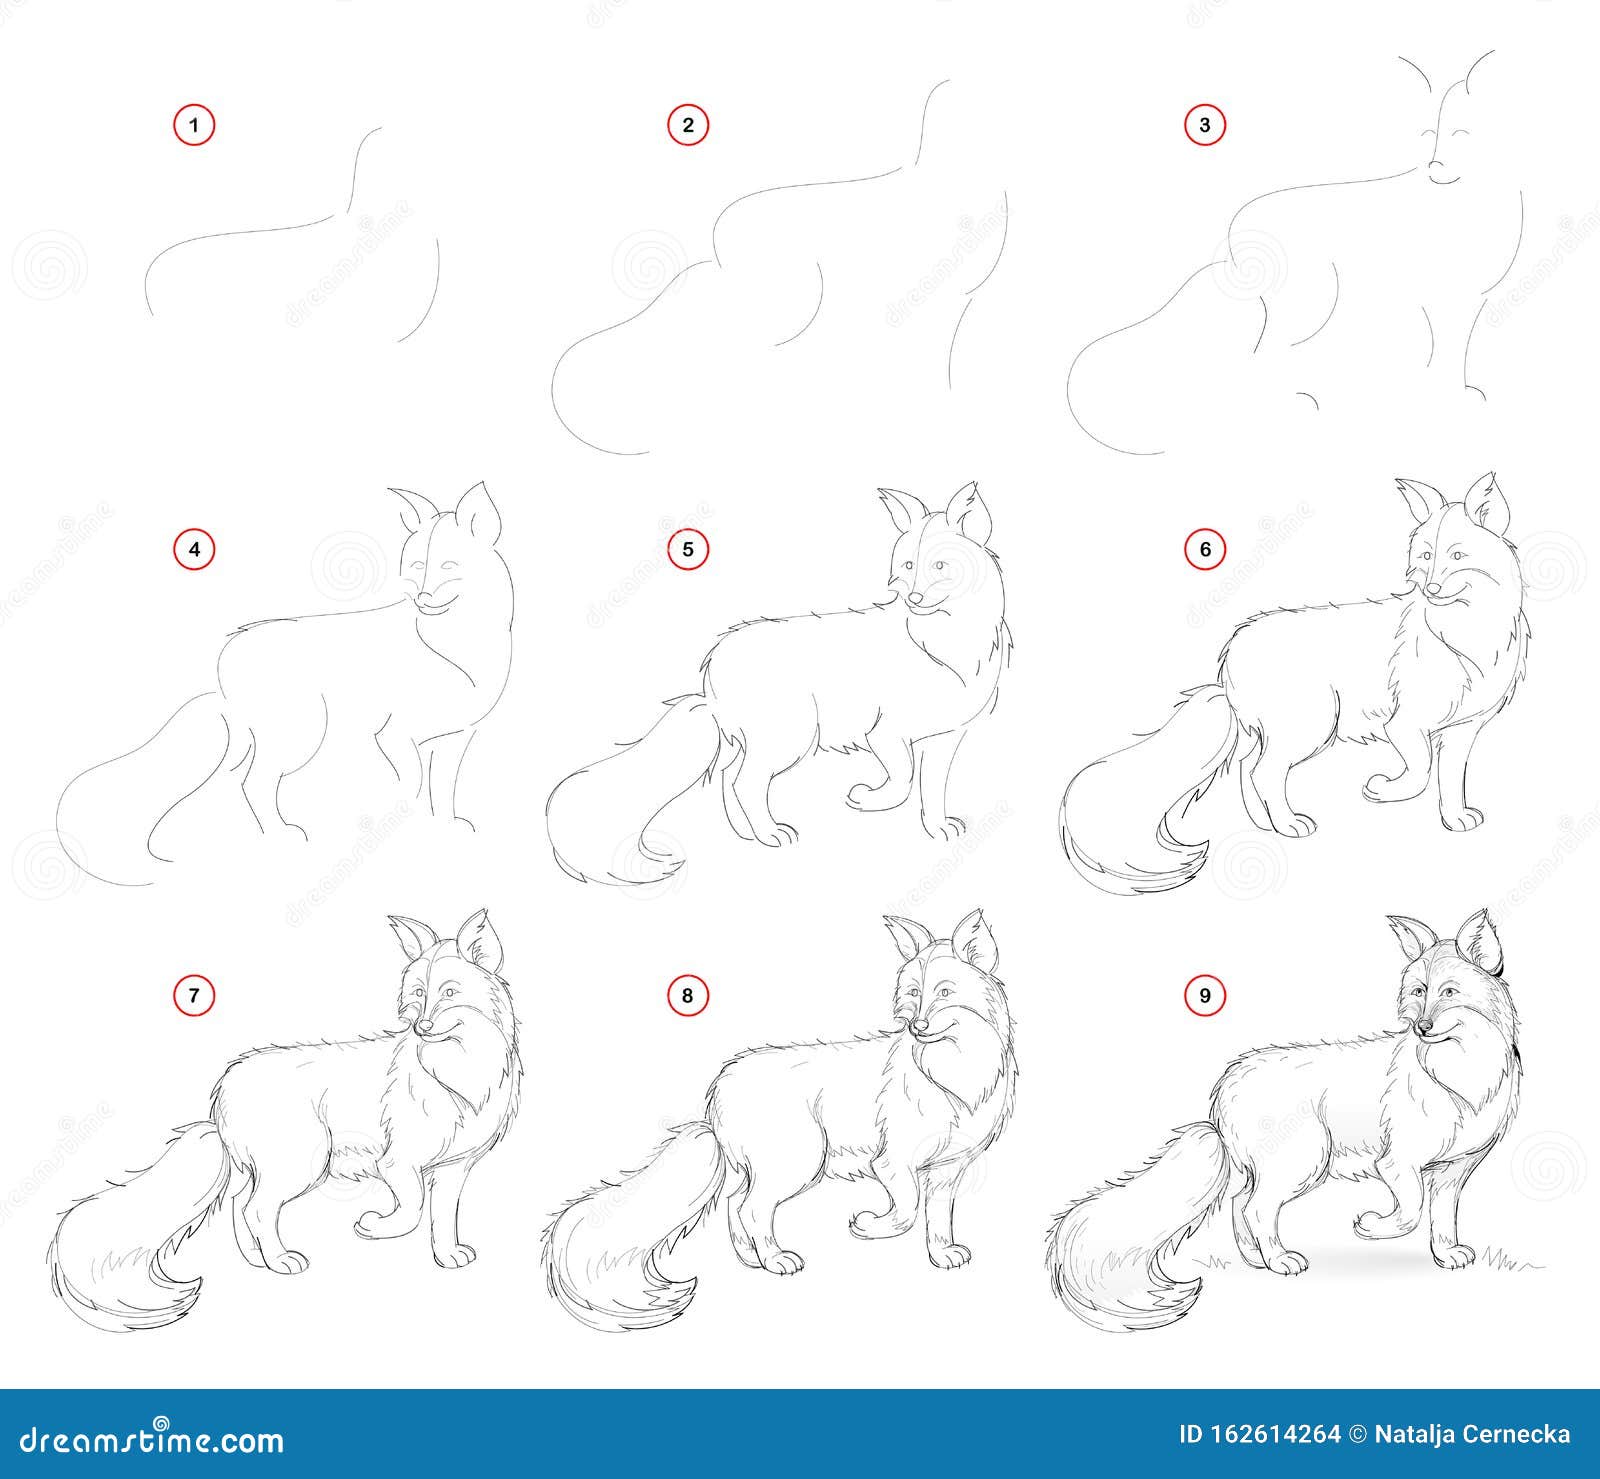 3 Formas de Desenhar uma Raposa - wikiHow